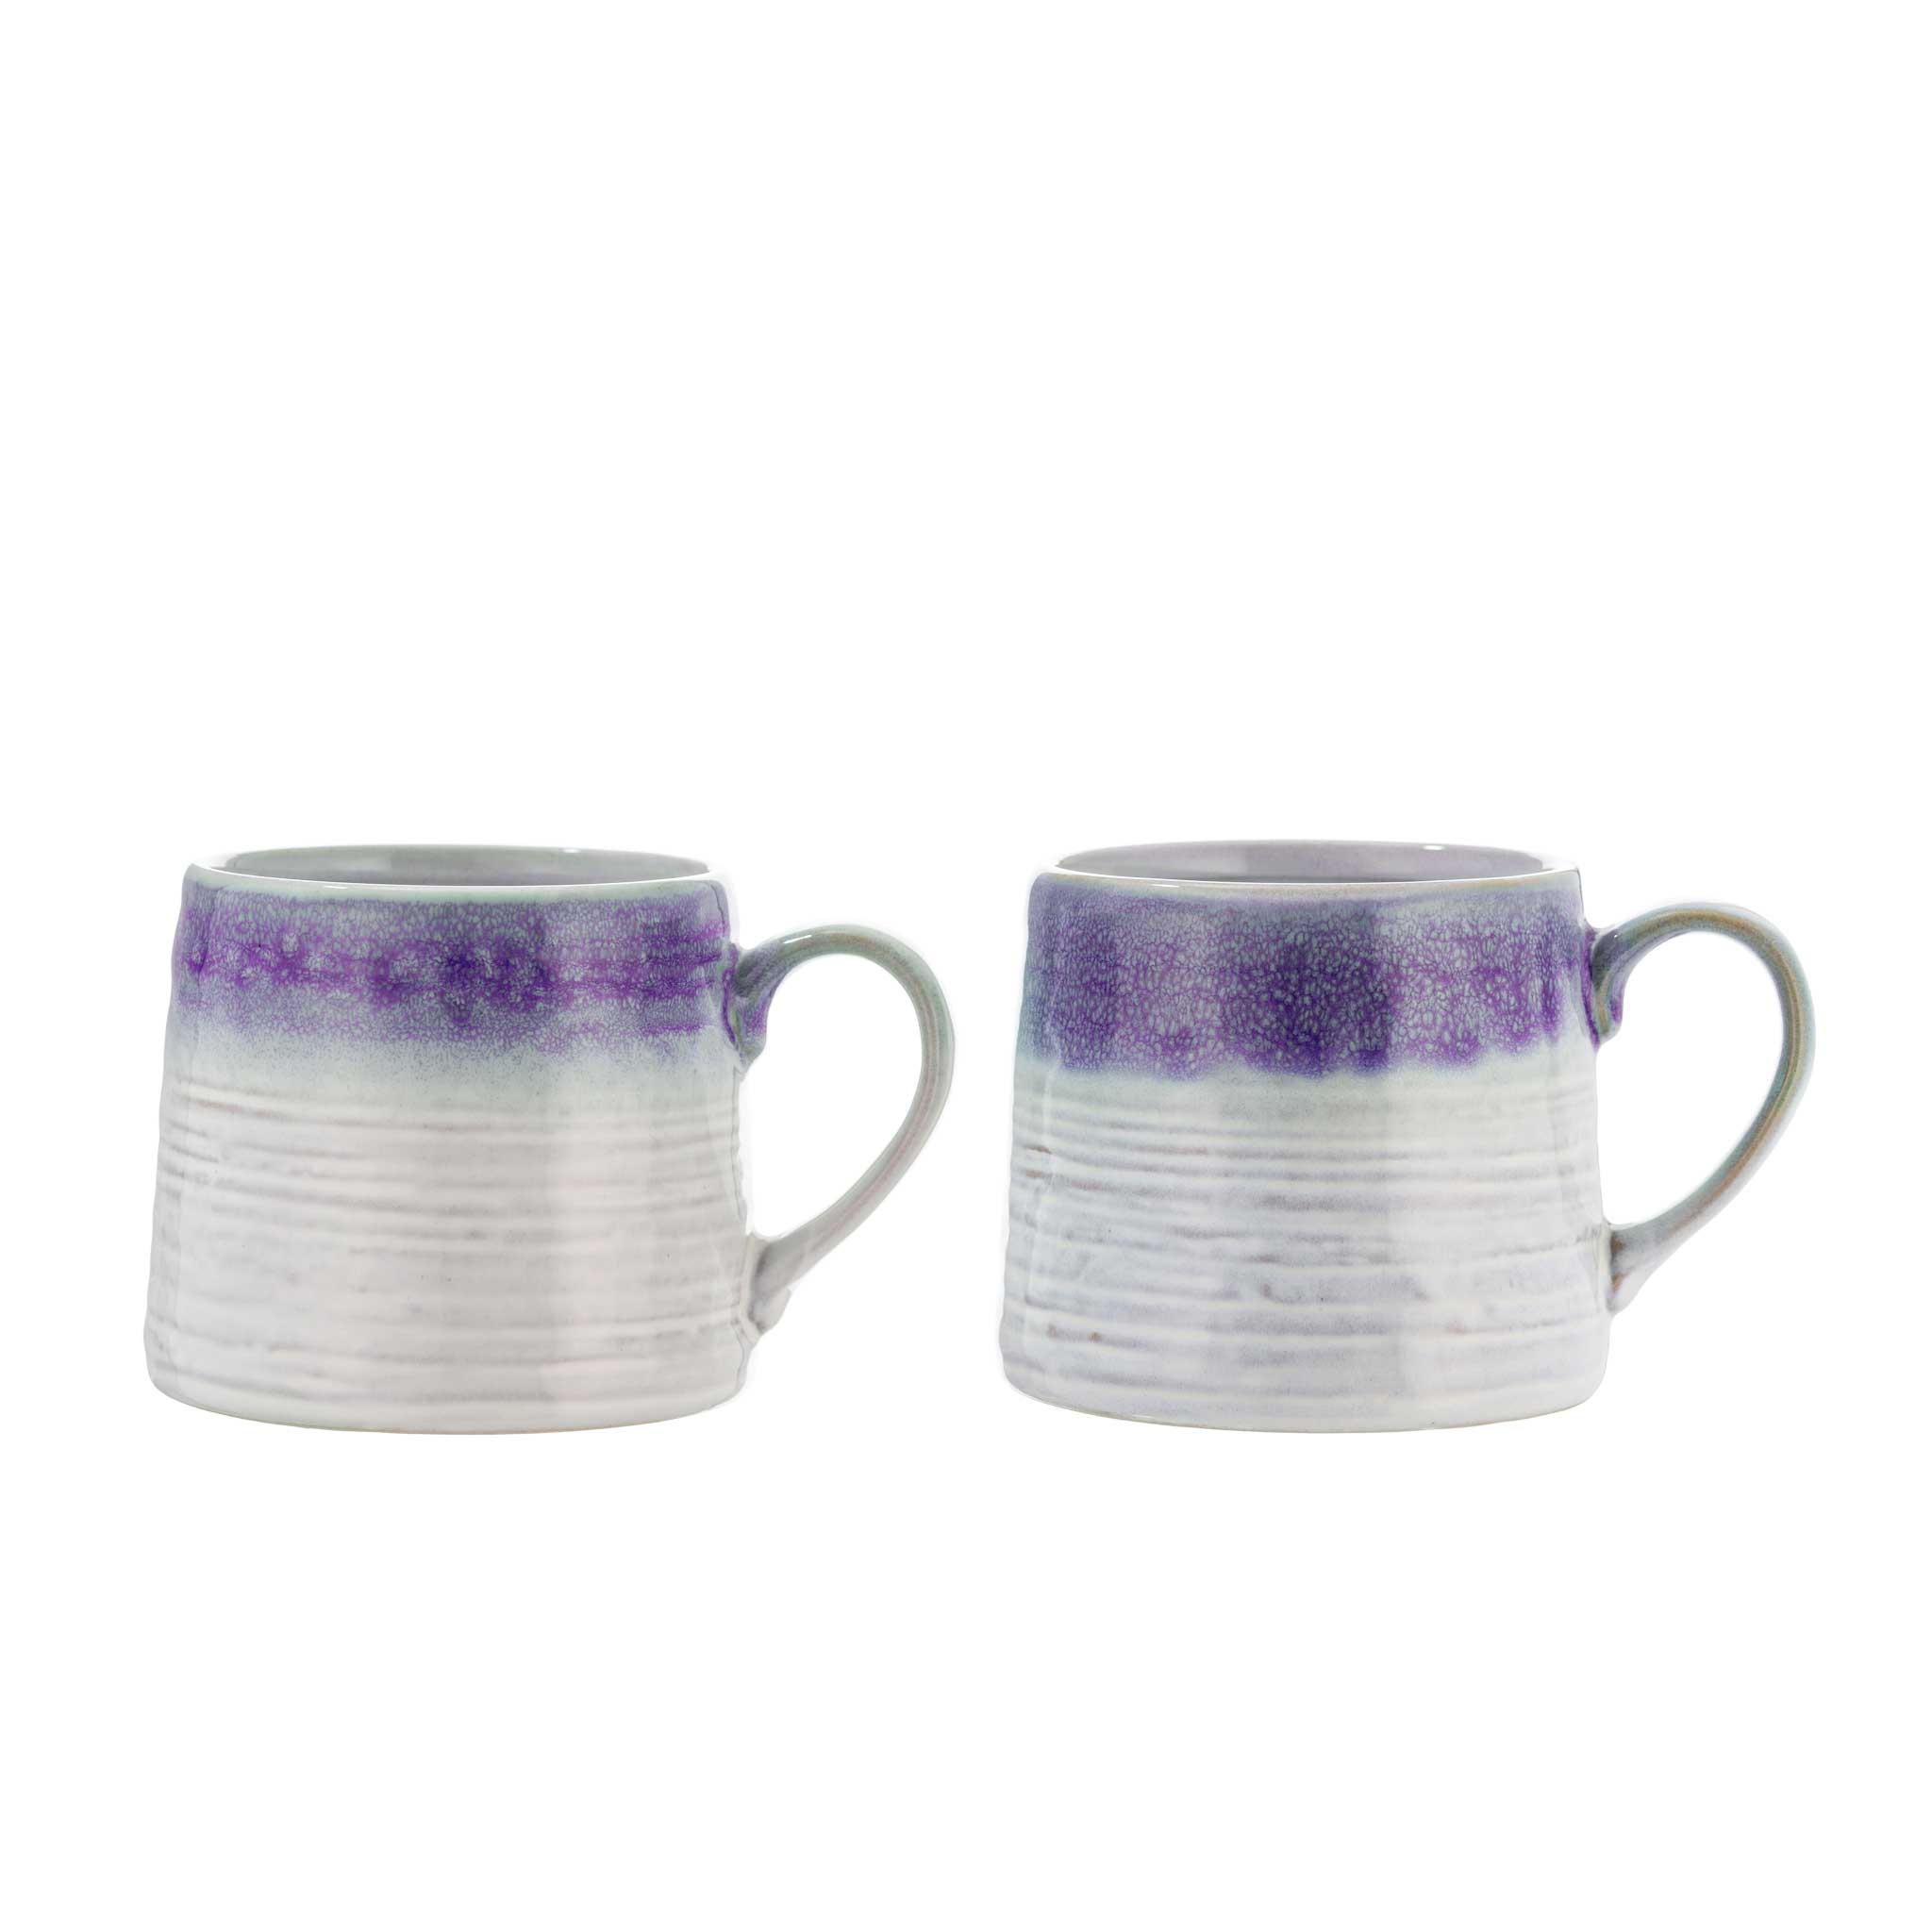 Purple & Grey Glaze Mugs from China Blue